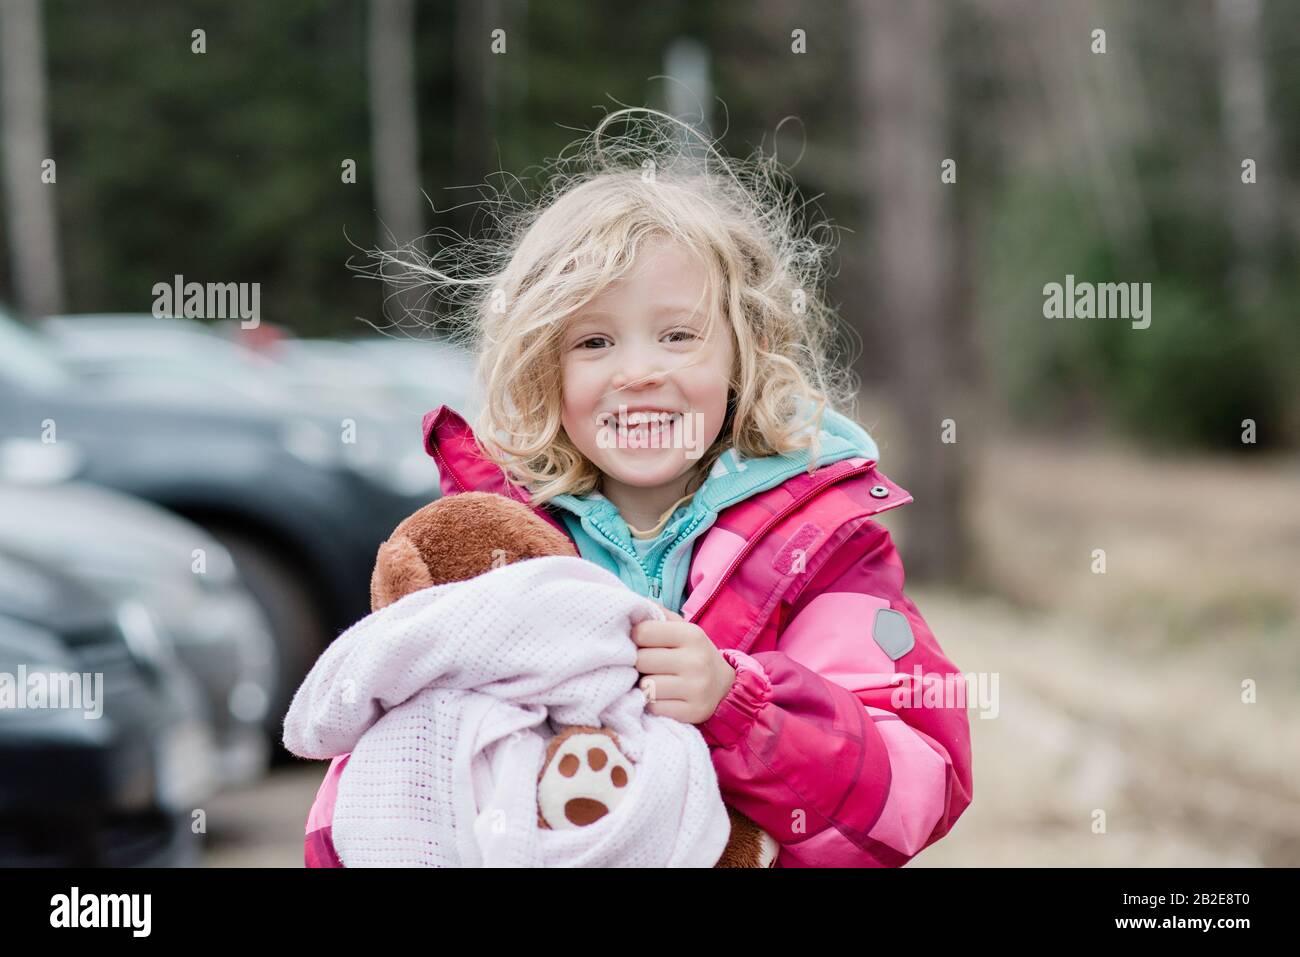 Ehrliches Porträt eines jungen Mädchens, das mit unordentlichen Haaren und Bettdecke lächelt Stockfoto